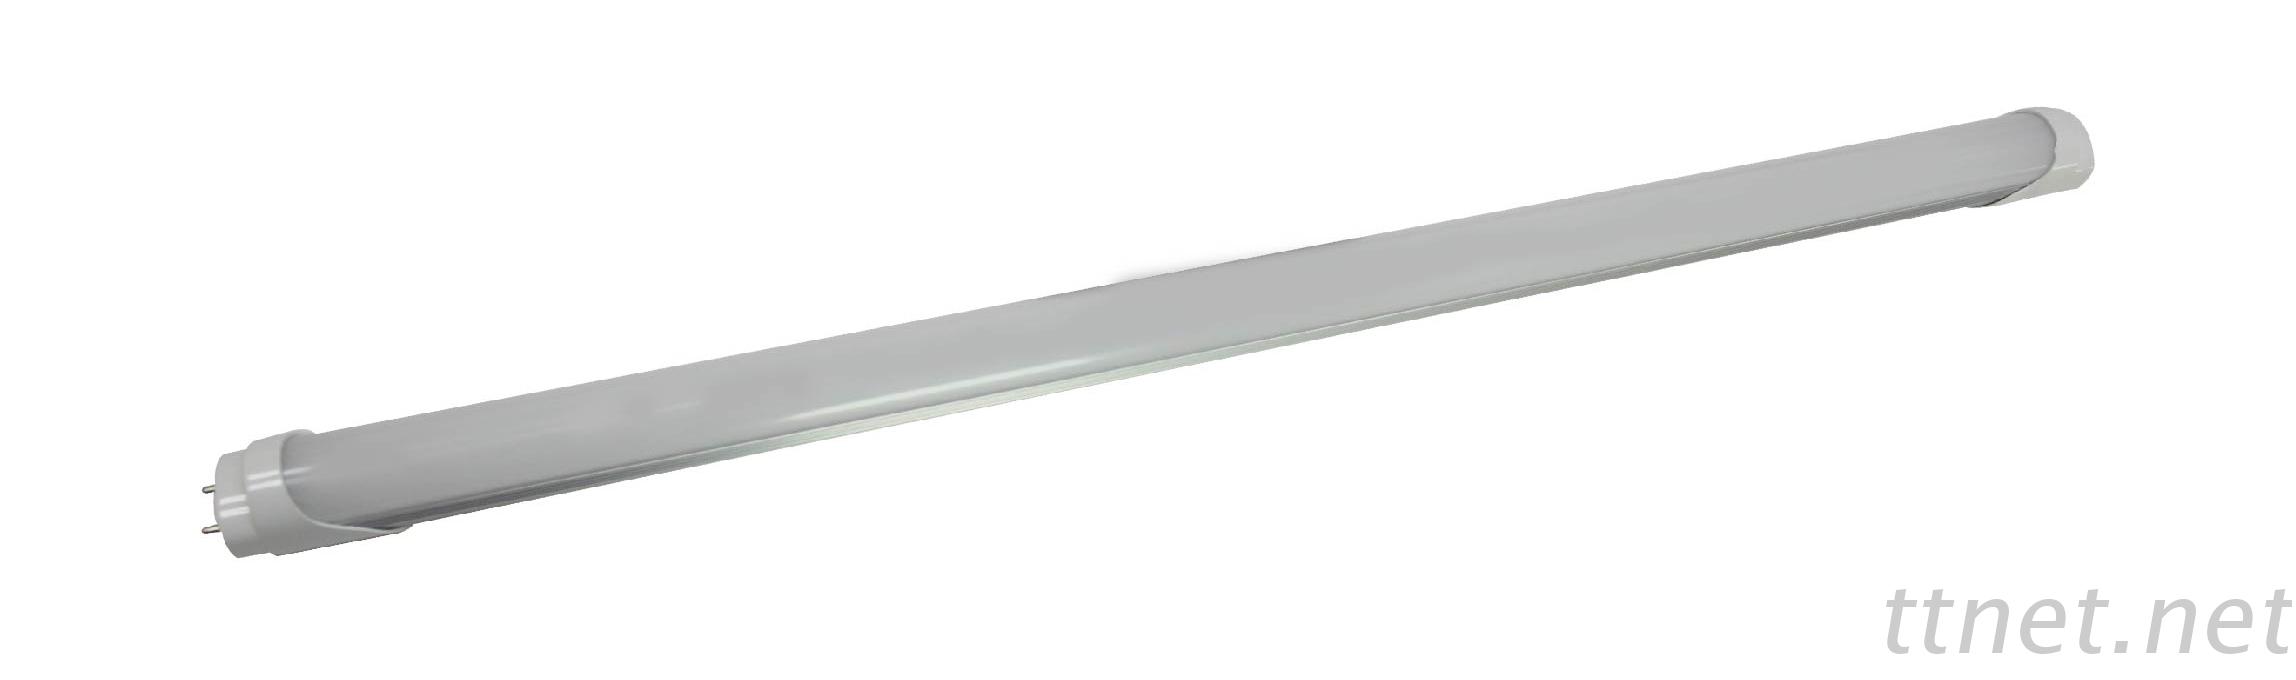 LED T8日光燈管-2呎/4呎